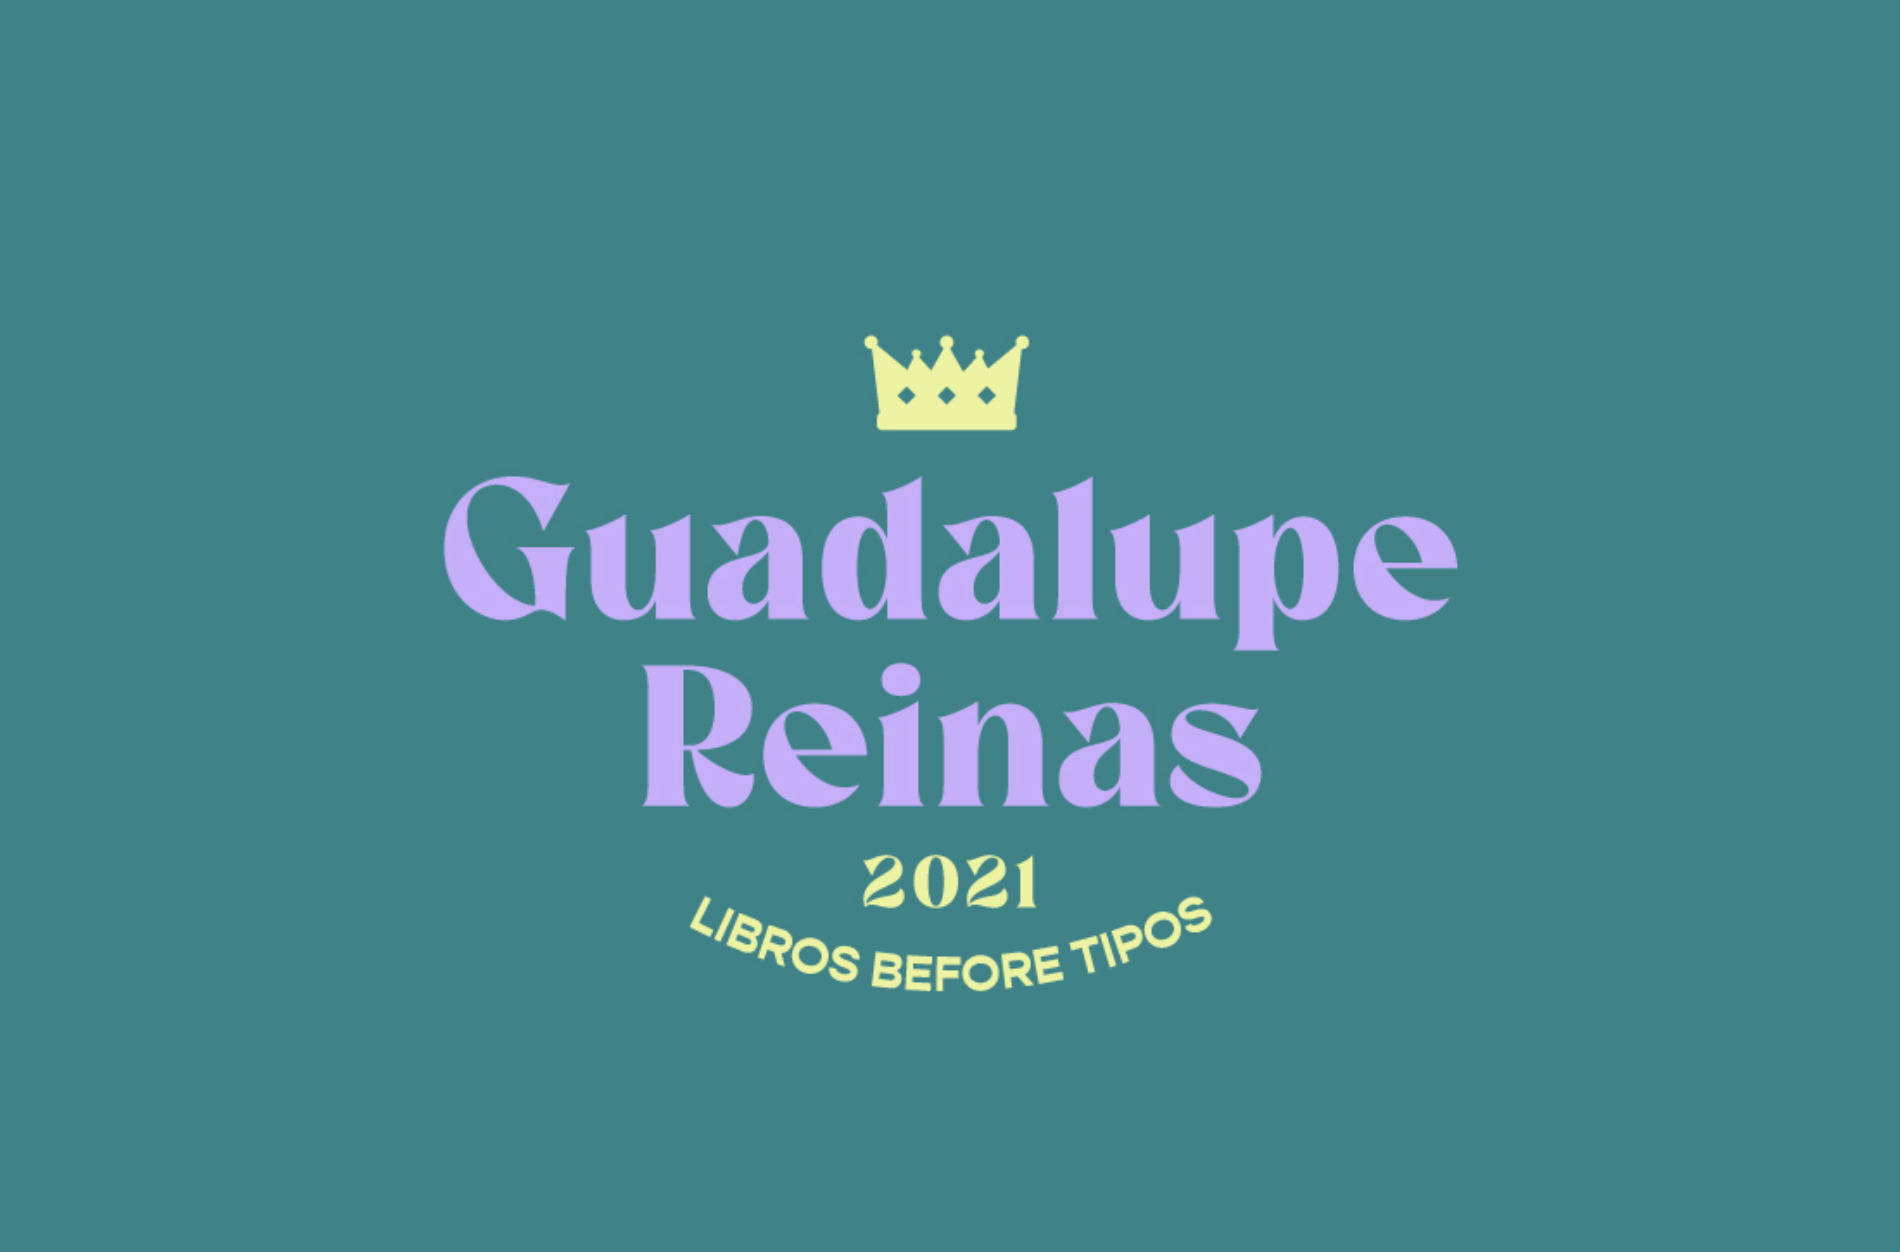 Guadalupe Reinas 2021, ¿qué es y cómo participar?